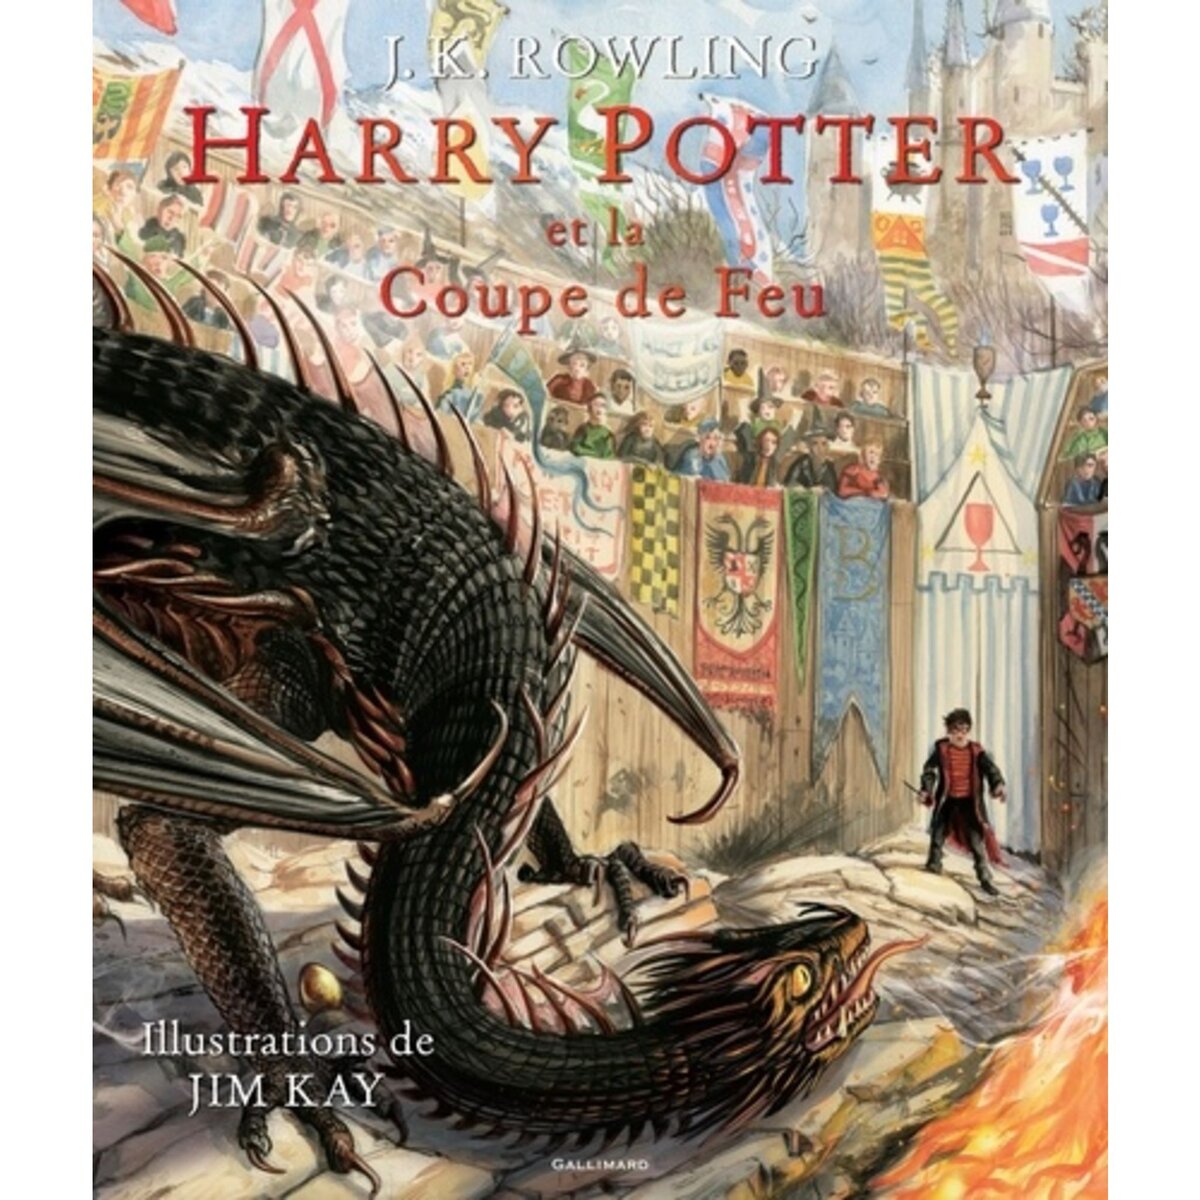  HARRY POTTER TOME 4 : HARRY POTTER ET LA COUPE DE FEU, Rowling J.K.